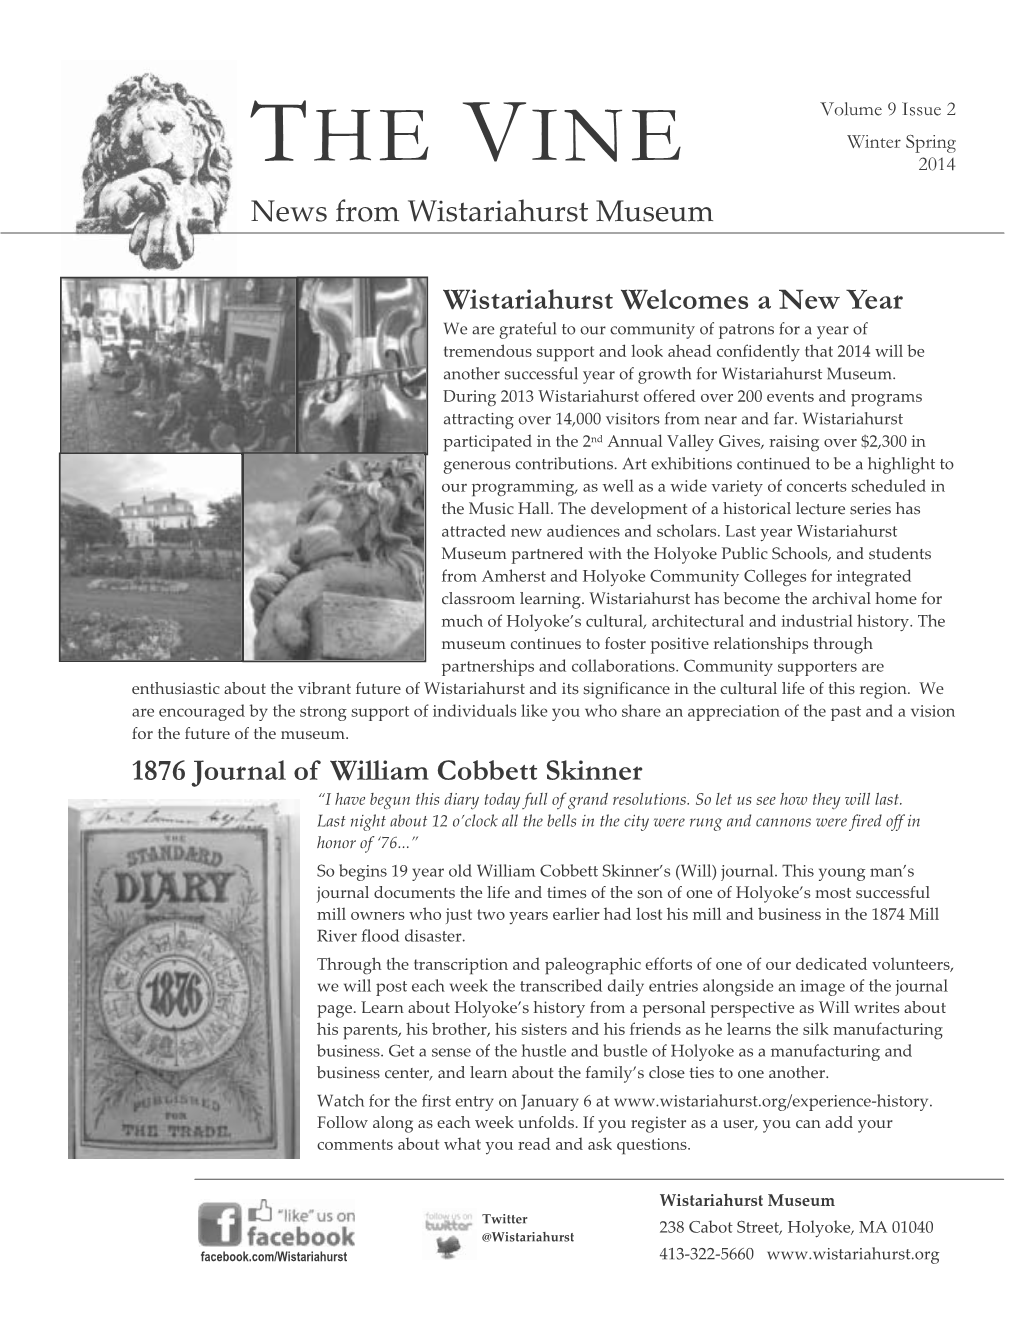 THE VINE 2014 News from Wistariahurst Museum